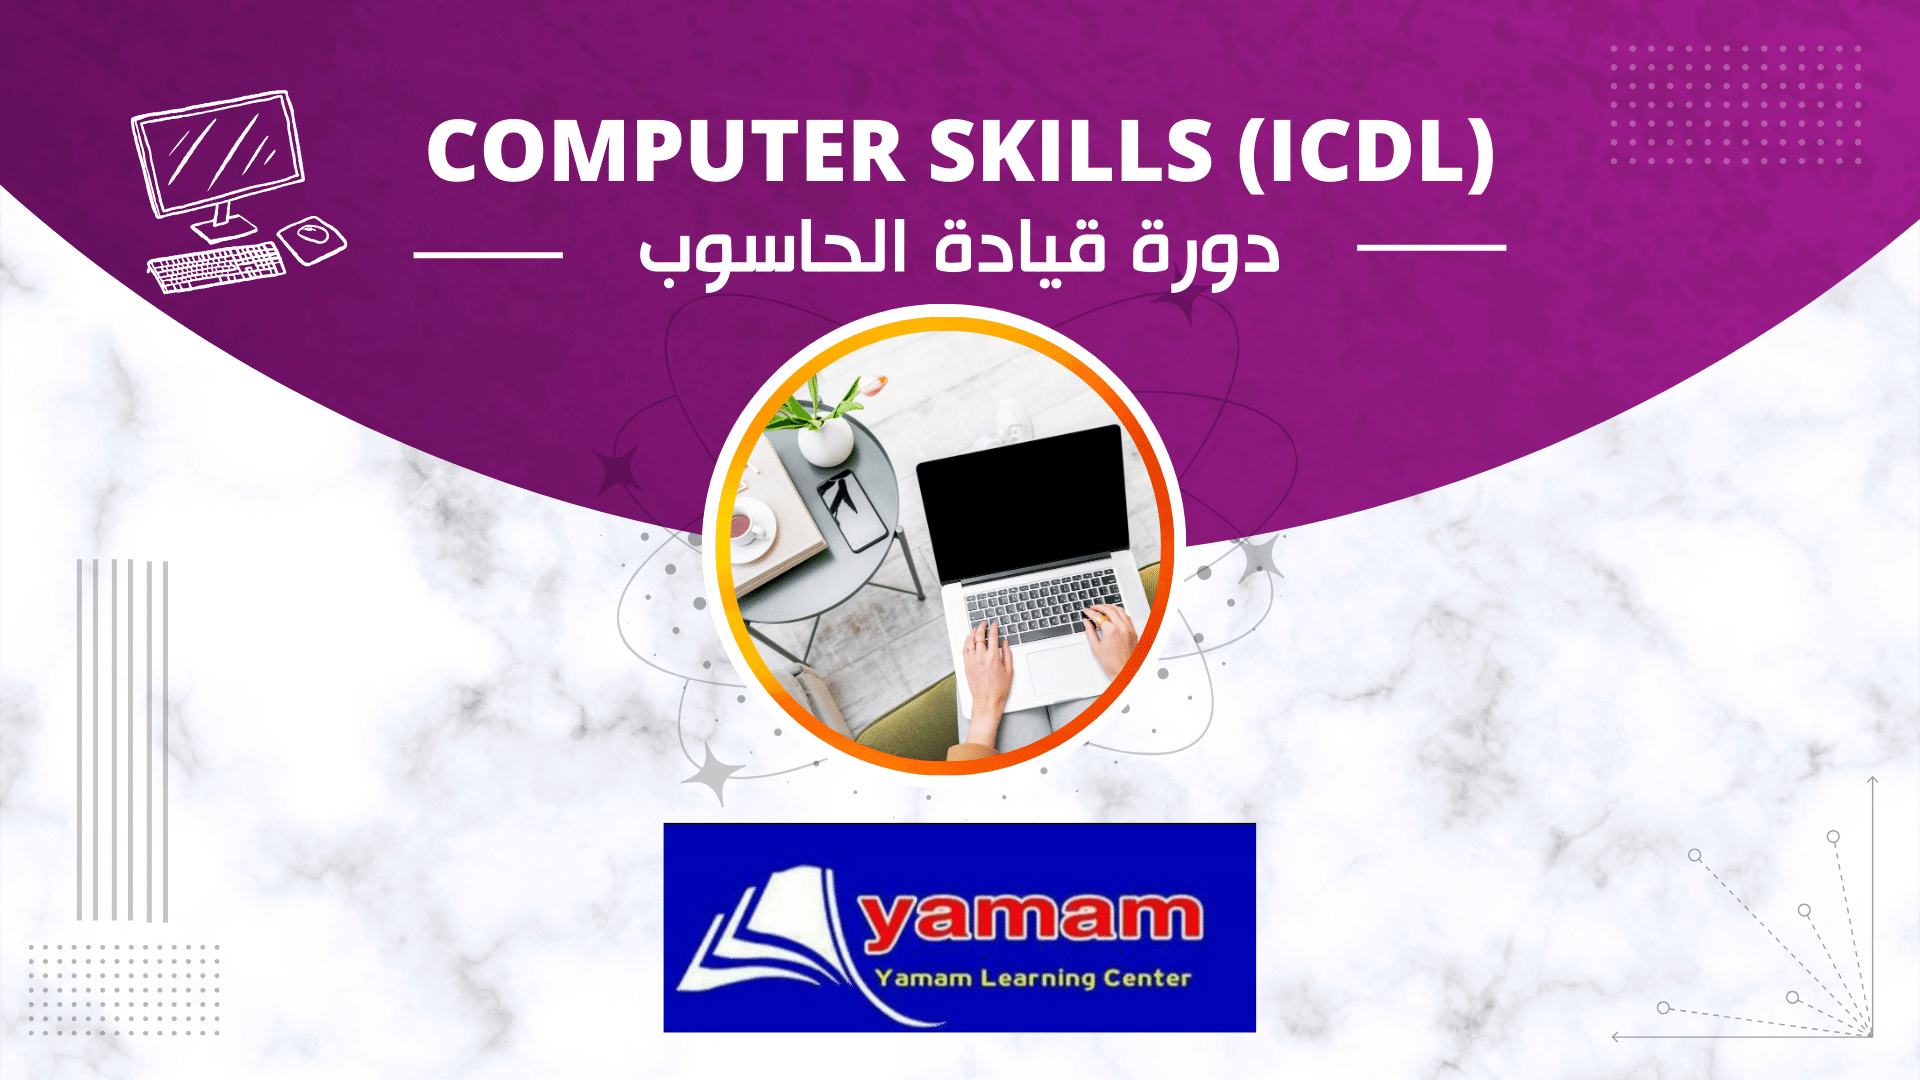 دورة قيادة الحاسوب Computer skills (ICDL)